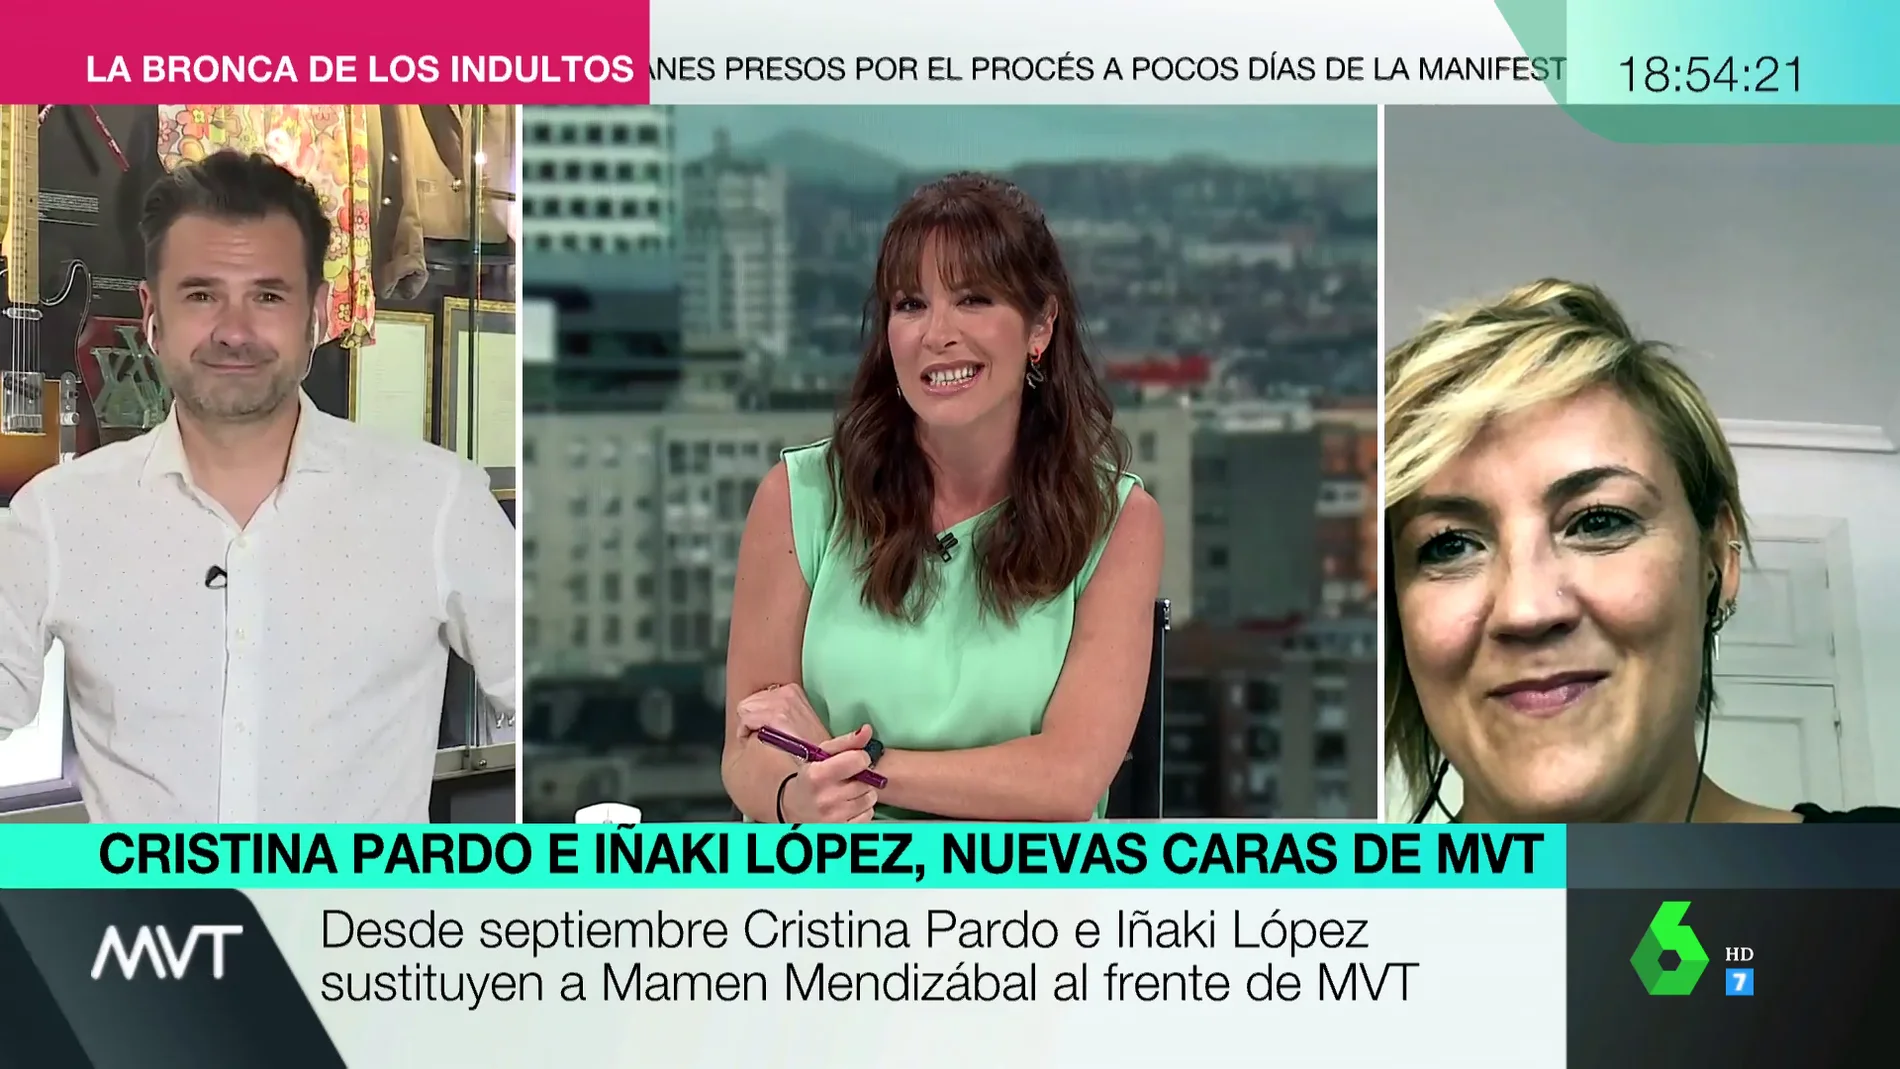 El mensaje de Mamen Mendizábal a Cristina Pardo e Iñaki López: "Dejo este programa en las mejores manos"